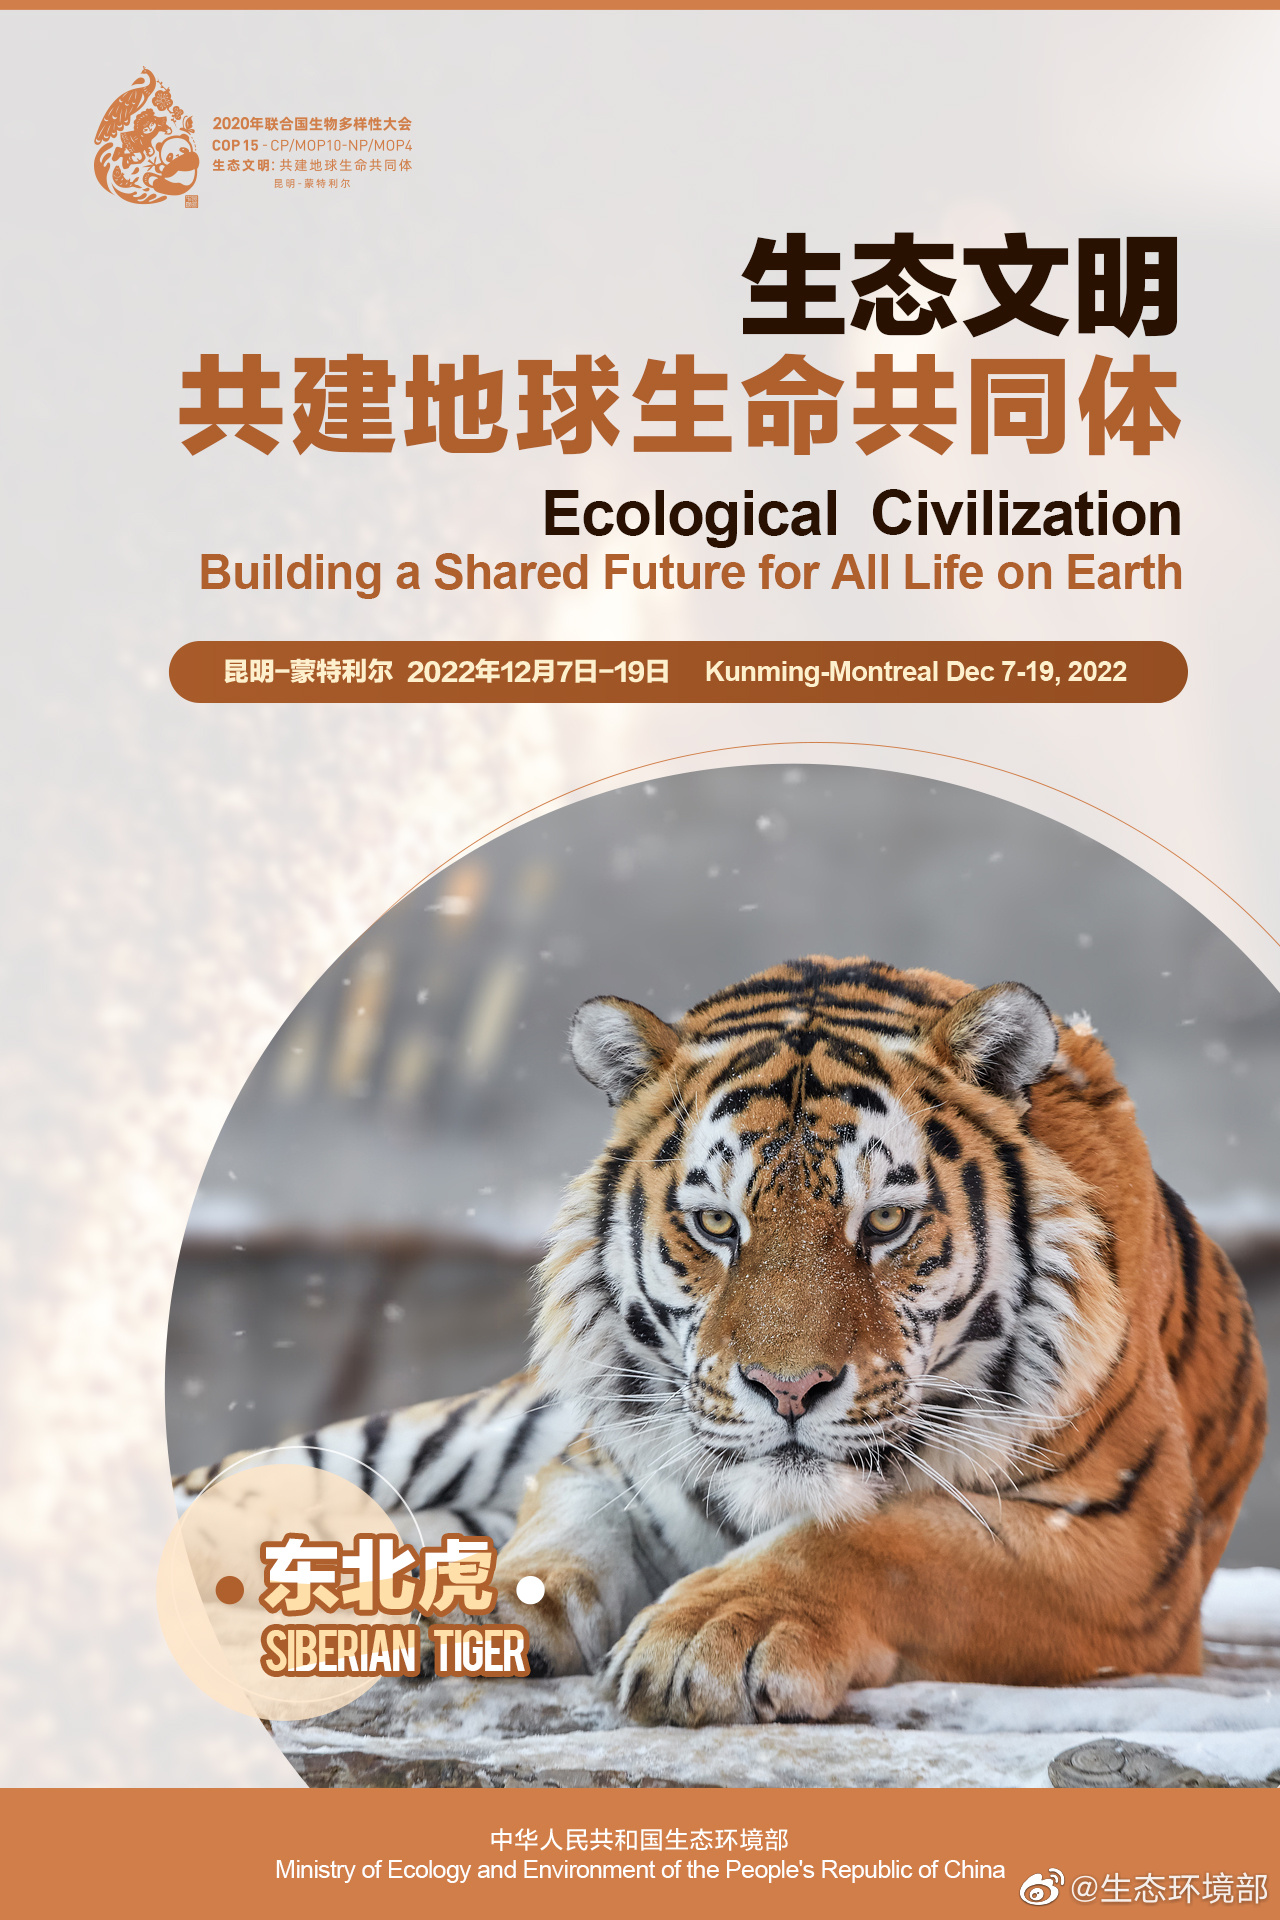 COP15中国宣传海报发布